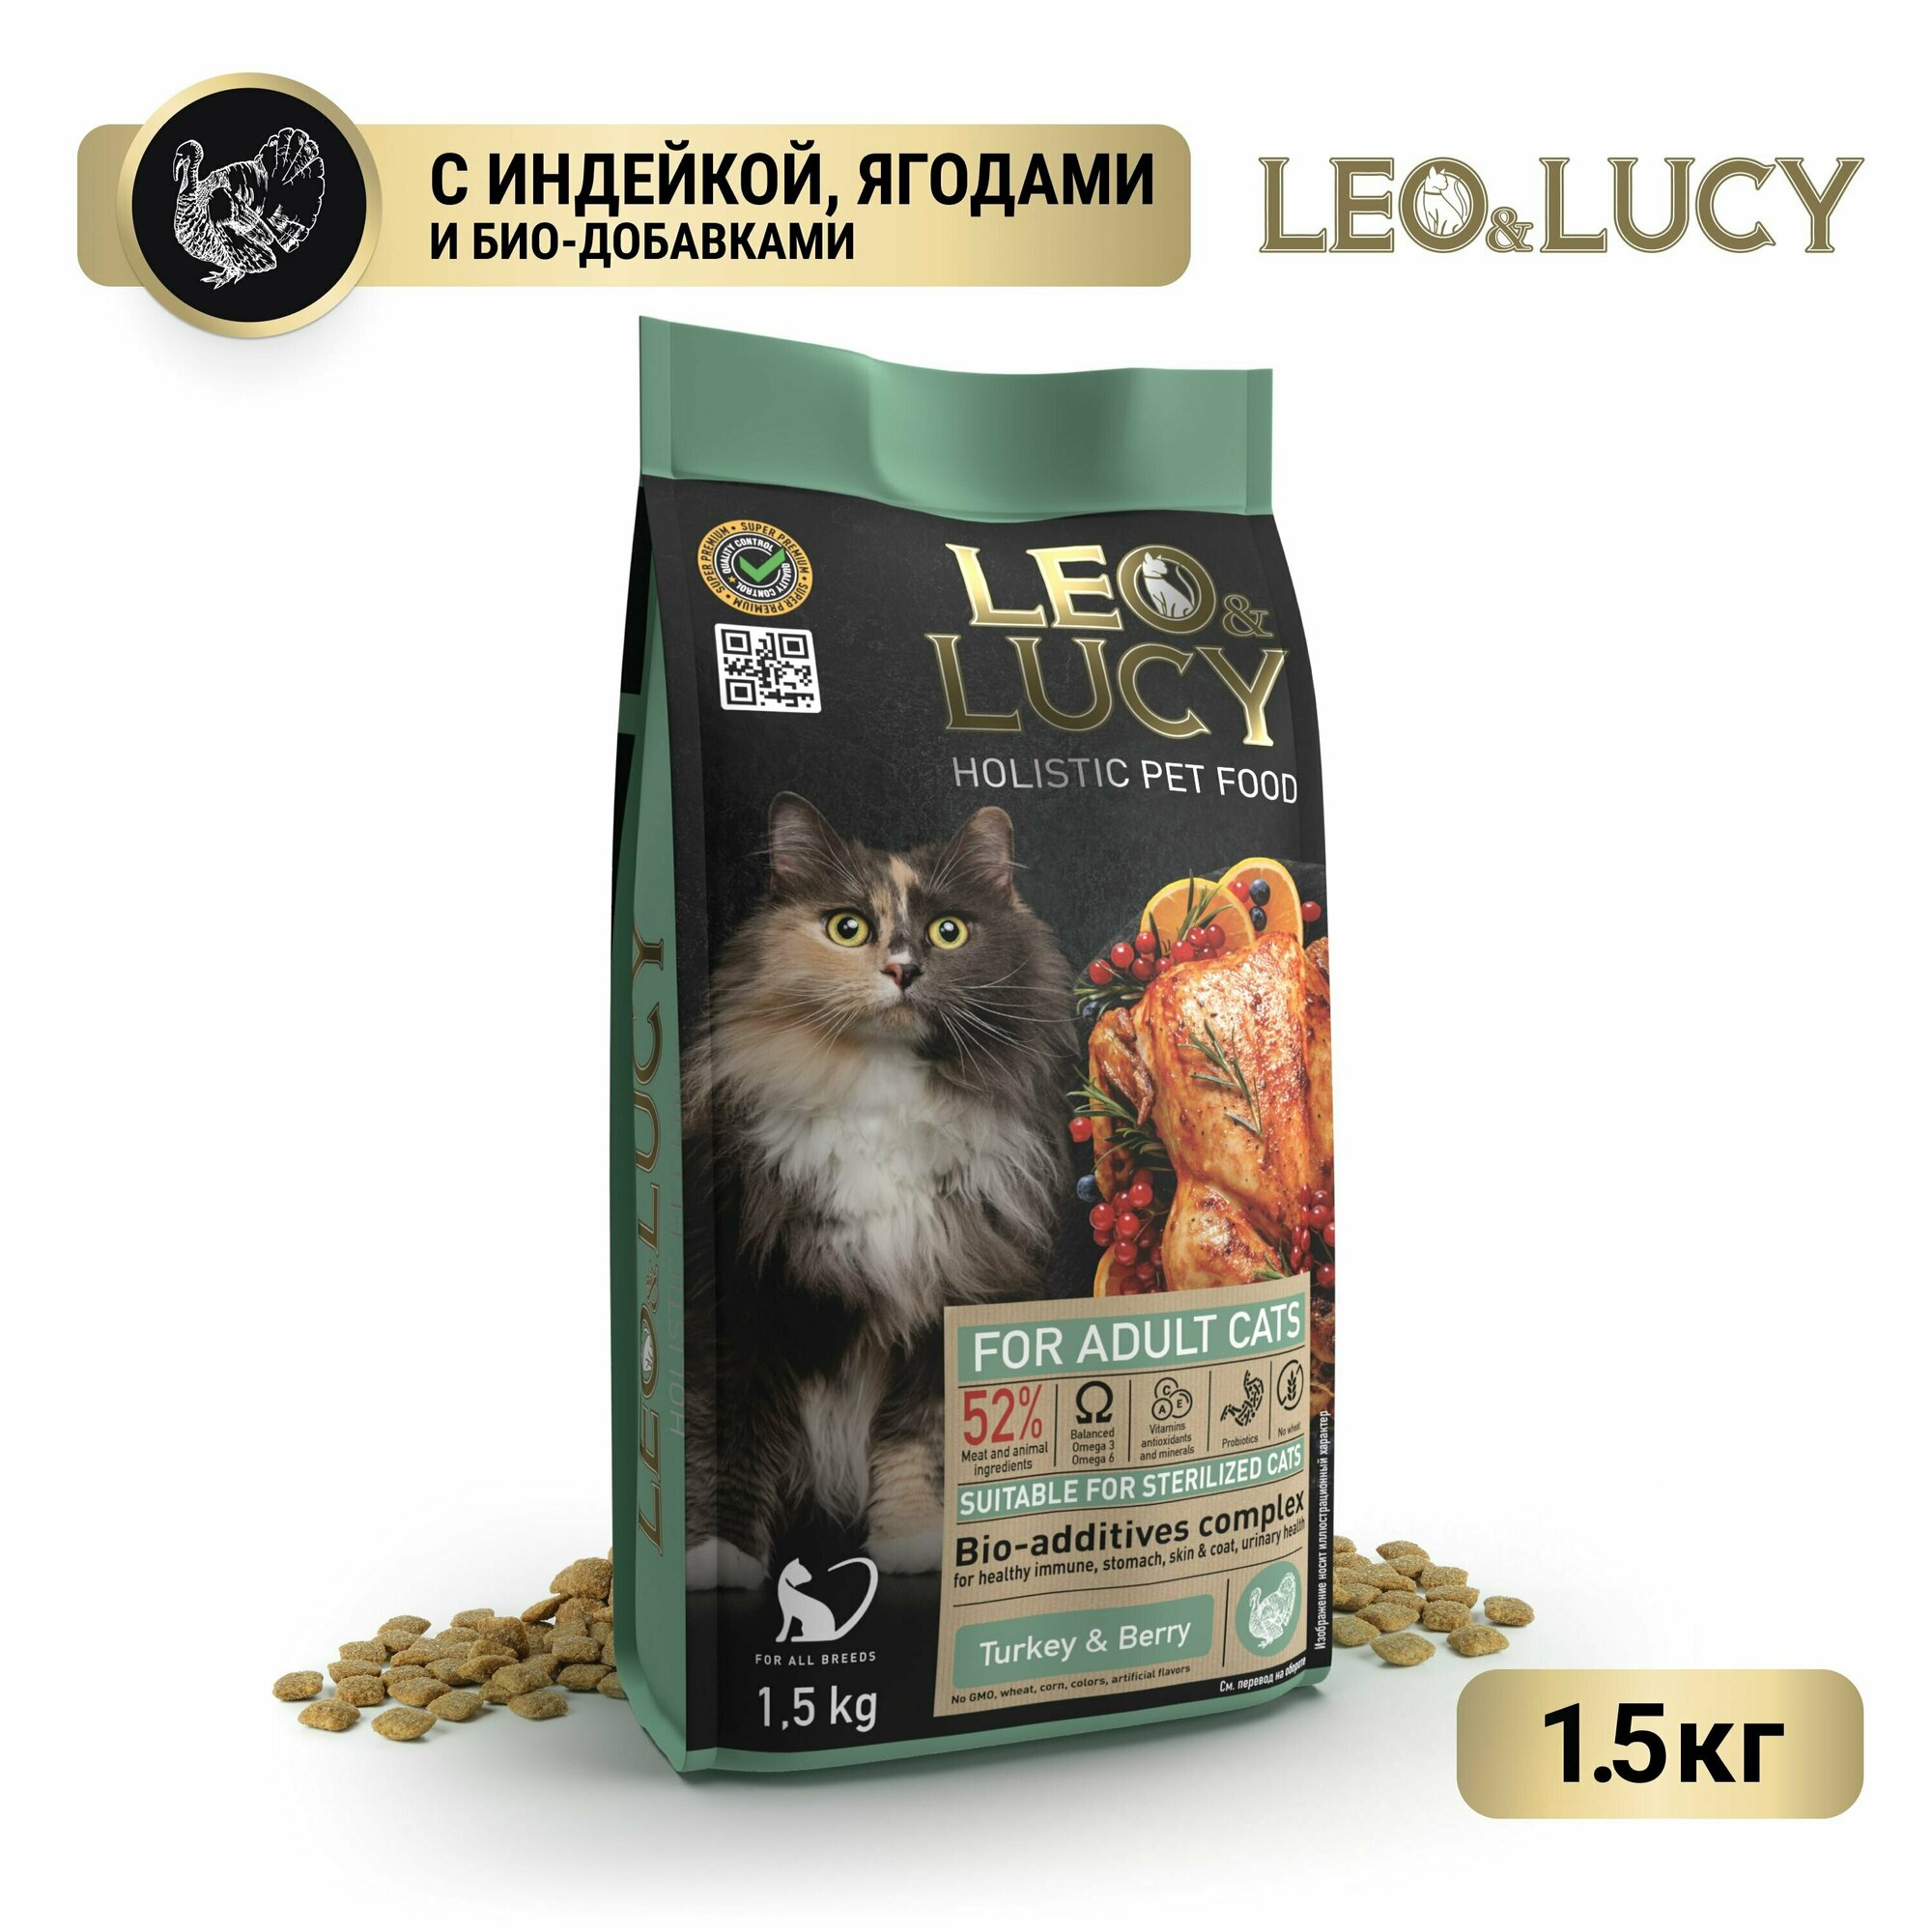 LEO&LUCY cухой холистик корм полнорационный для взрослых кошек с индейкой, ягодами и биодобавками, подходит для стерилизованных и пожилых, 1,5 кг.